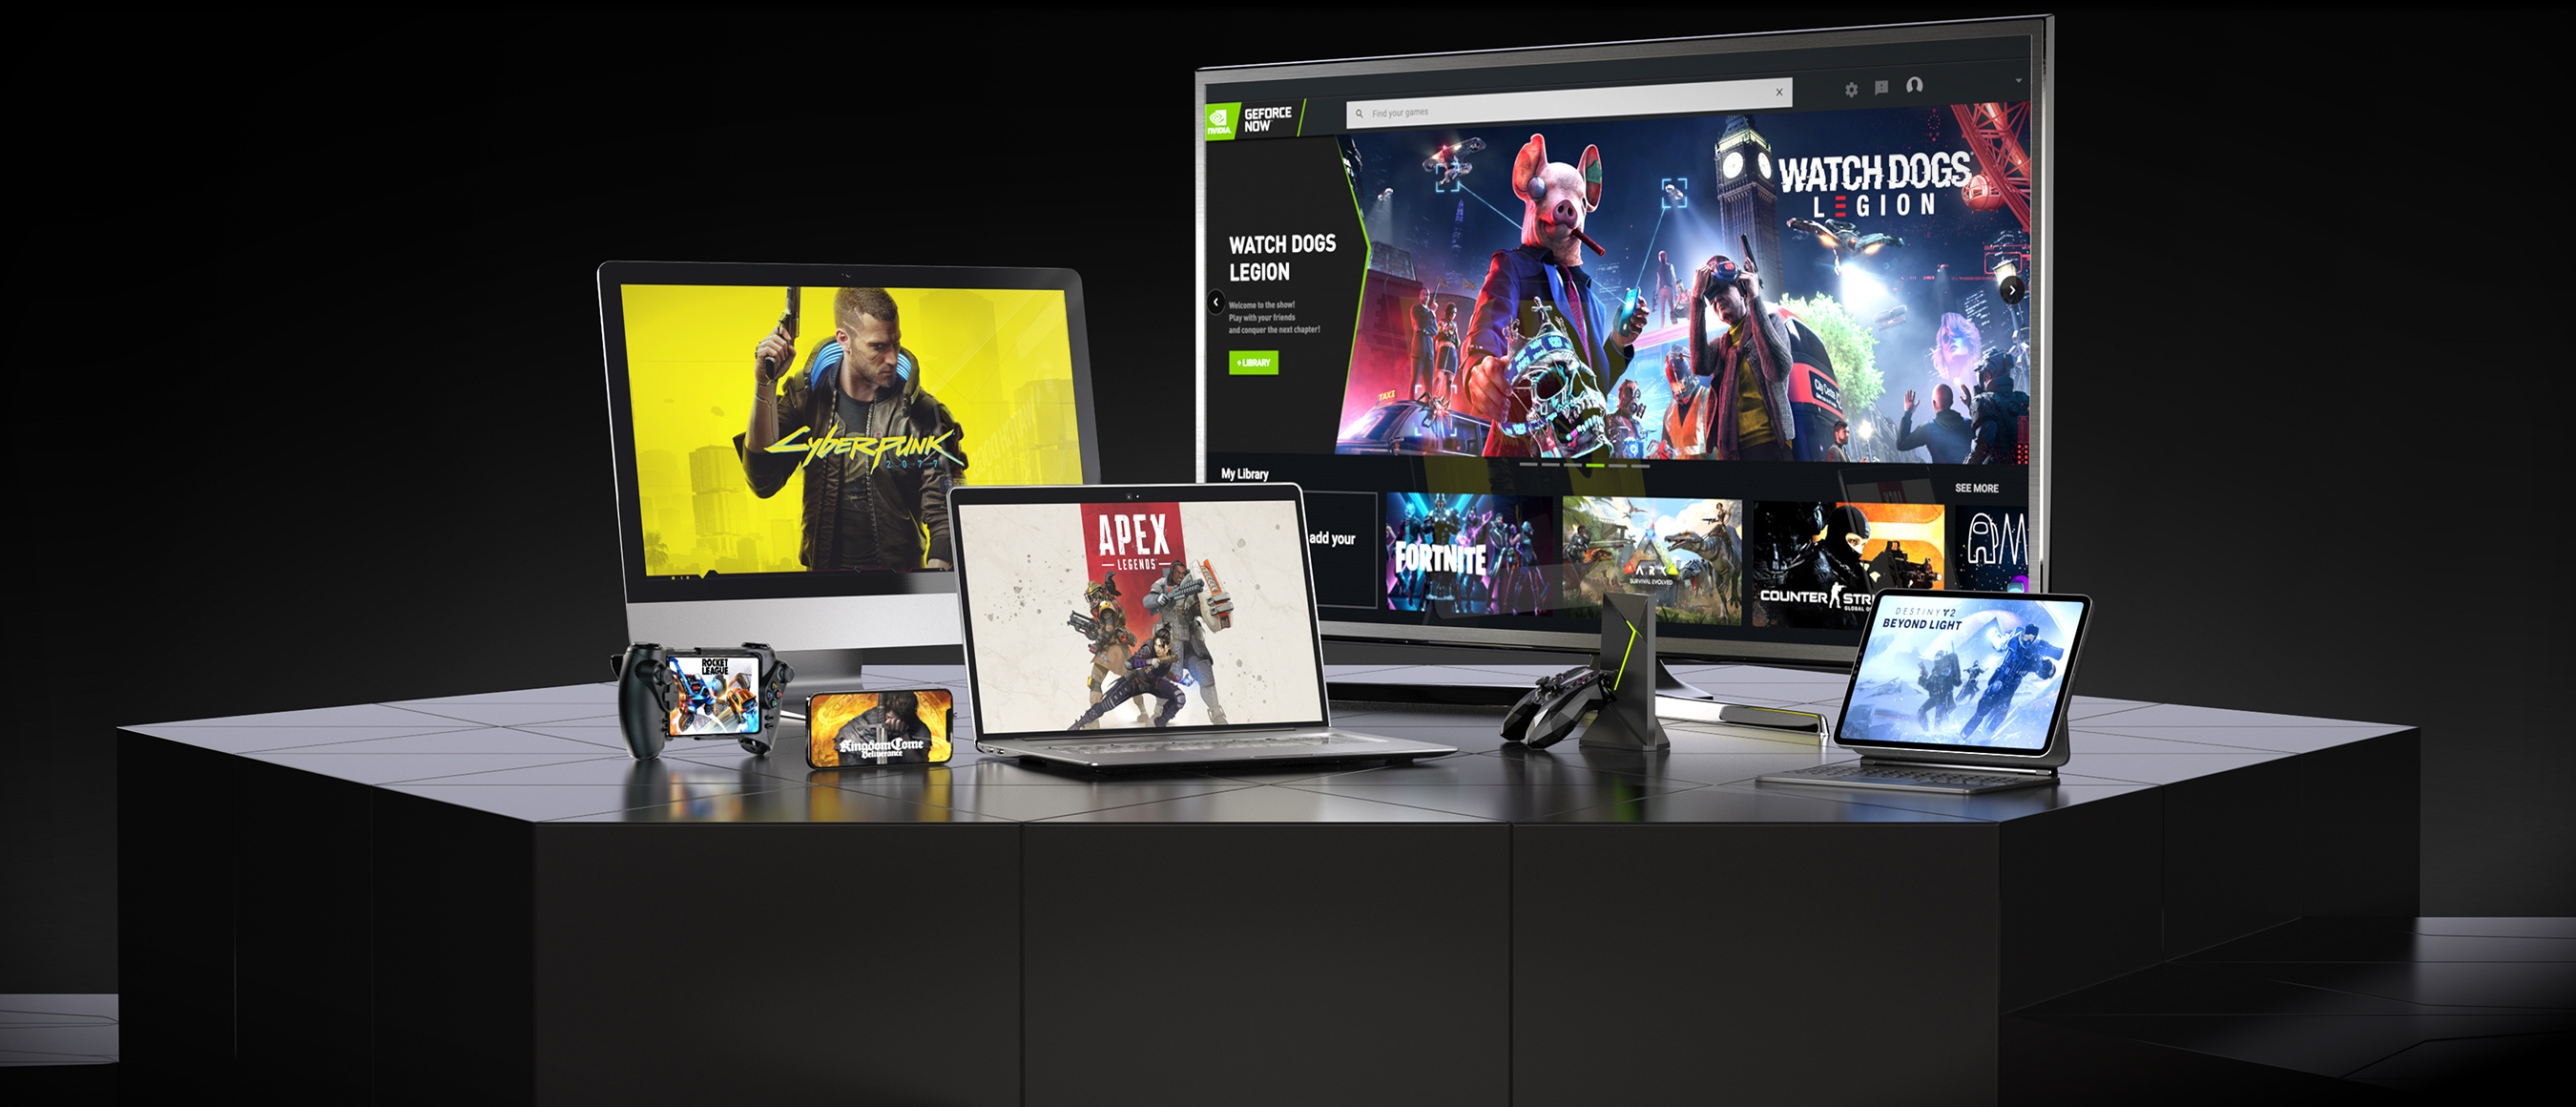 NVIDIA verlässt sich bei der Entwicklung seiner Cloud-Gaming-Plattform auf AMD